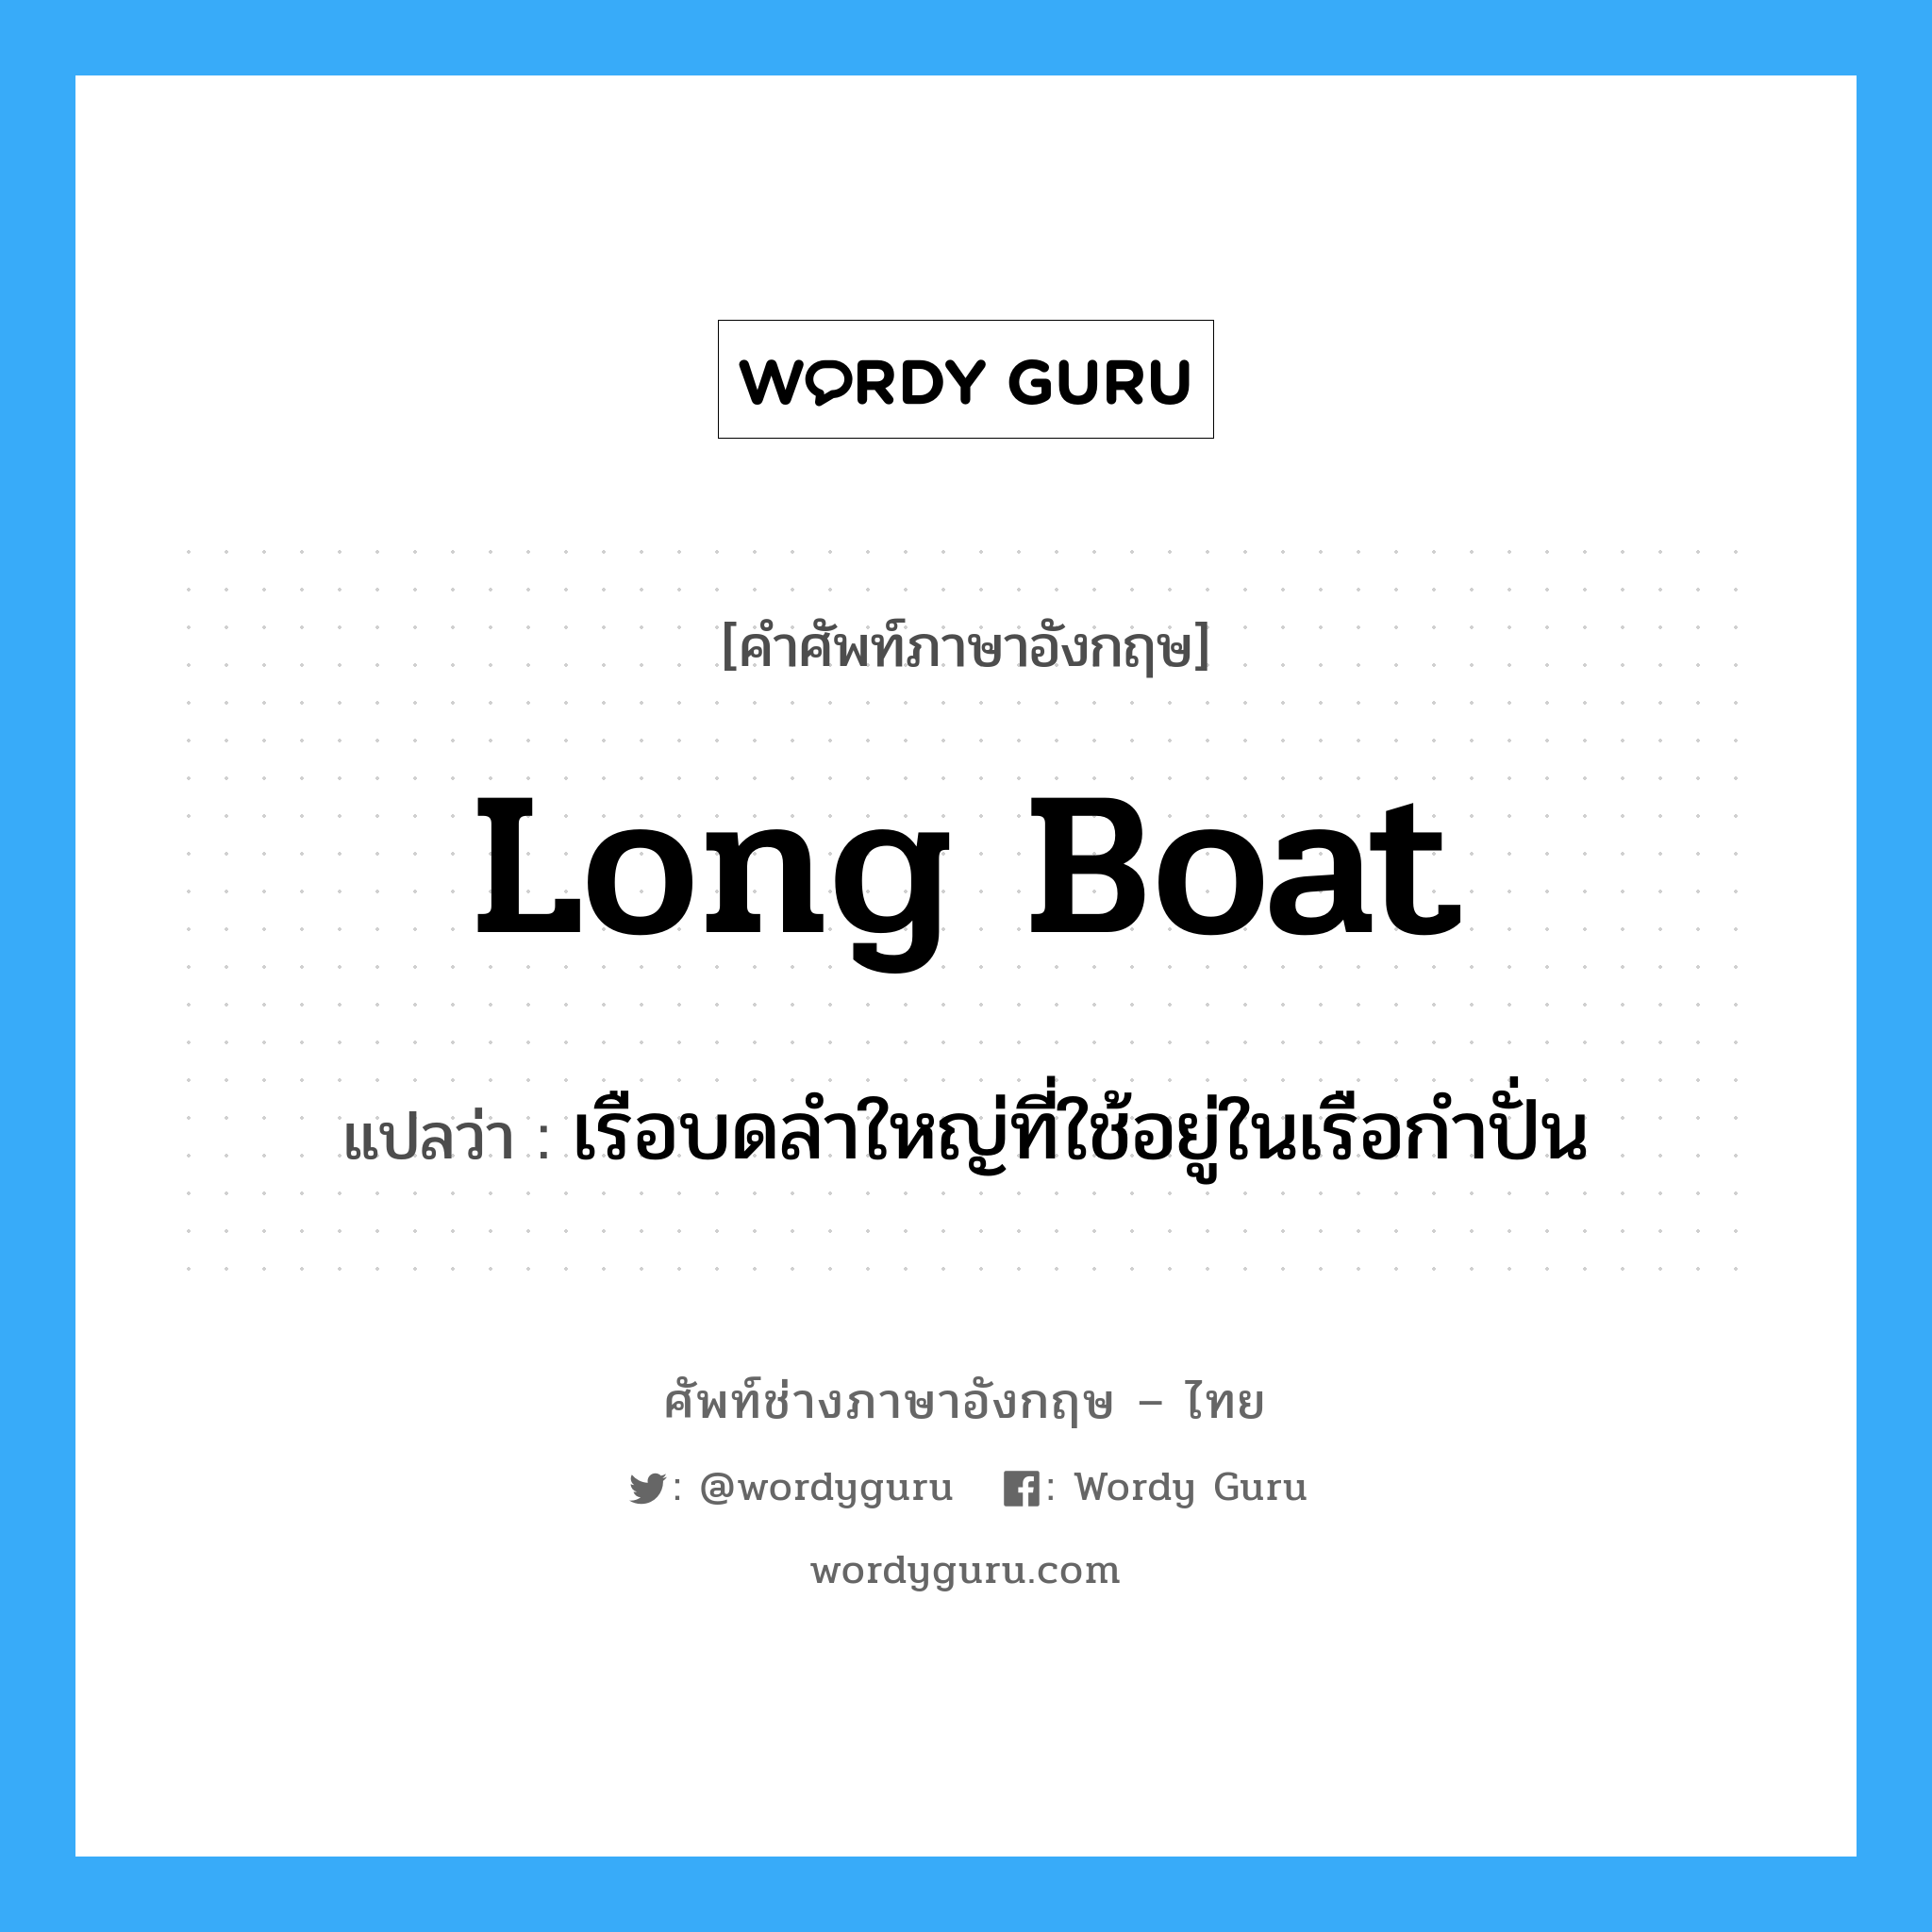 long boat แปลว่า?, คำศัพท์ช่างภาษาอังกฤษ - ไทย long boat คำศัพท์ภาษาอังกฤษ long boat แปลว่า เรือบดลำใหญ่ที่ใช้อยู่ในเรือกำปั่น